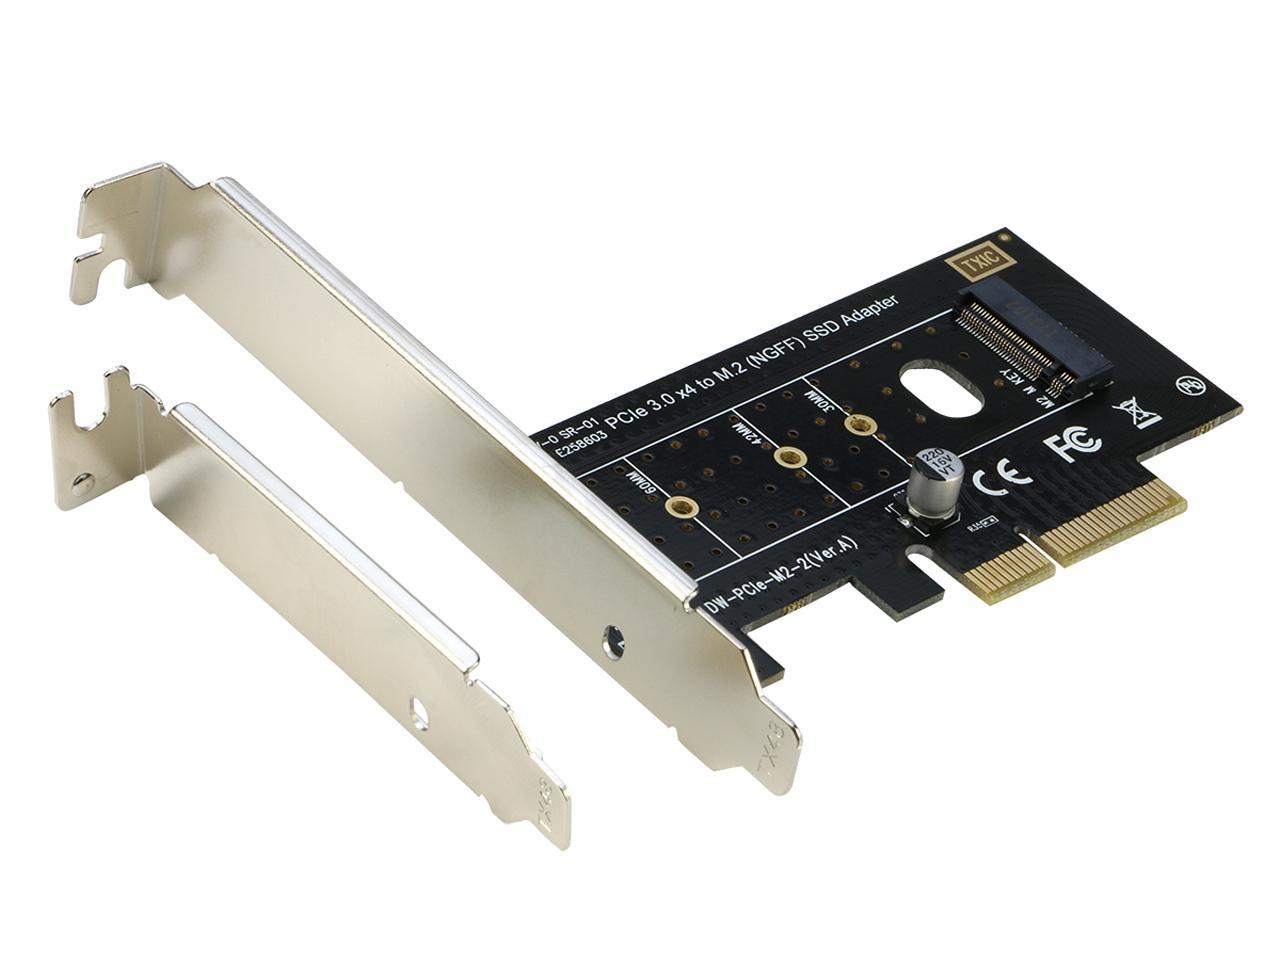 M.2 PCI-E NVMe Adapter Card to PCI-E 3.0 x4 SSD M Key SDD Converter Card for XP941 SM951 M6E PM951 950 SSD 